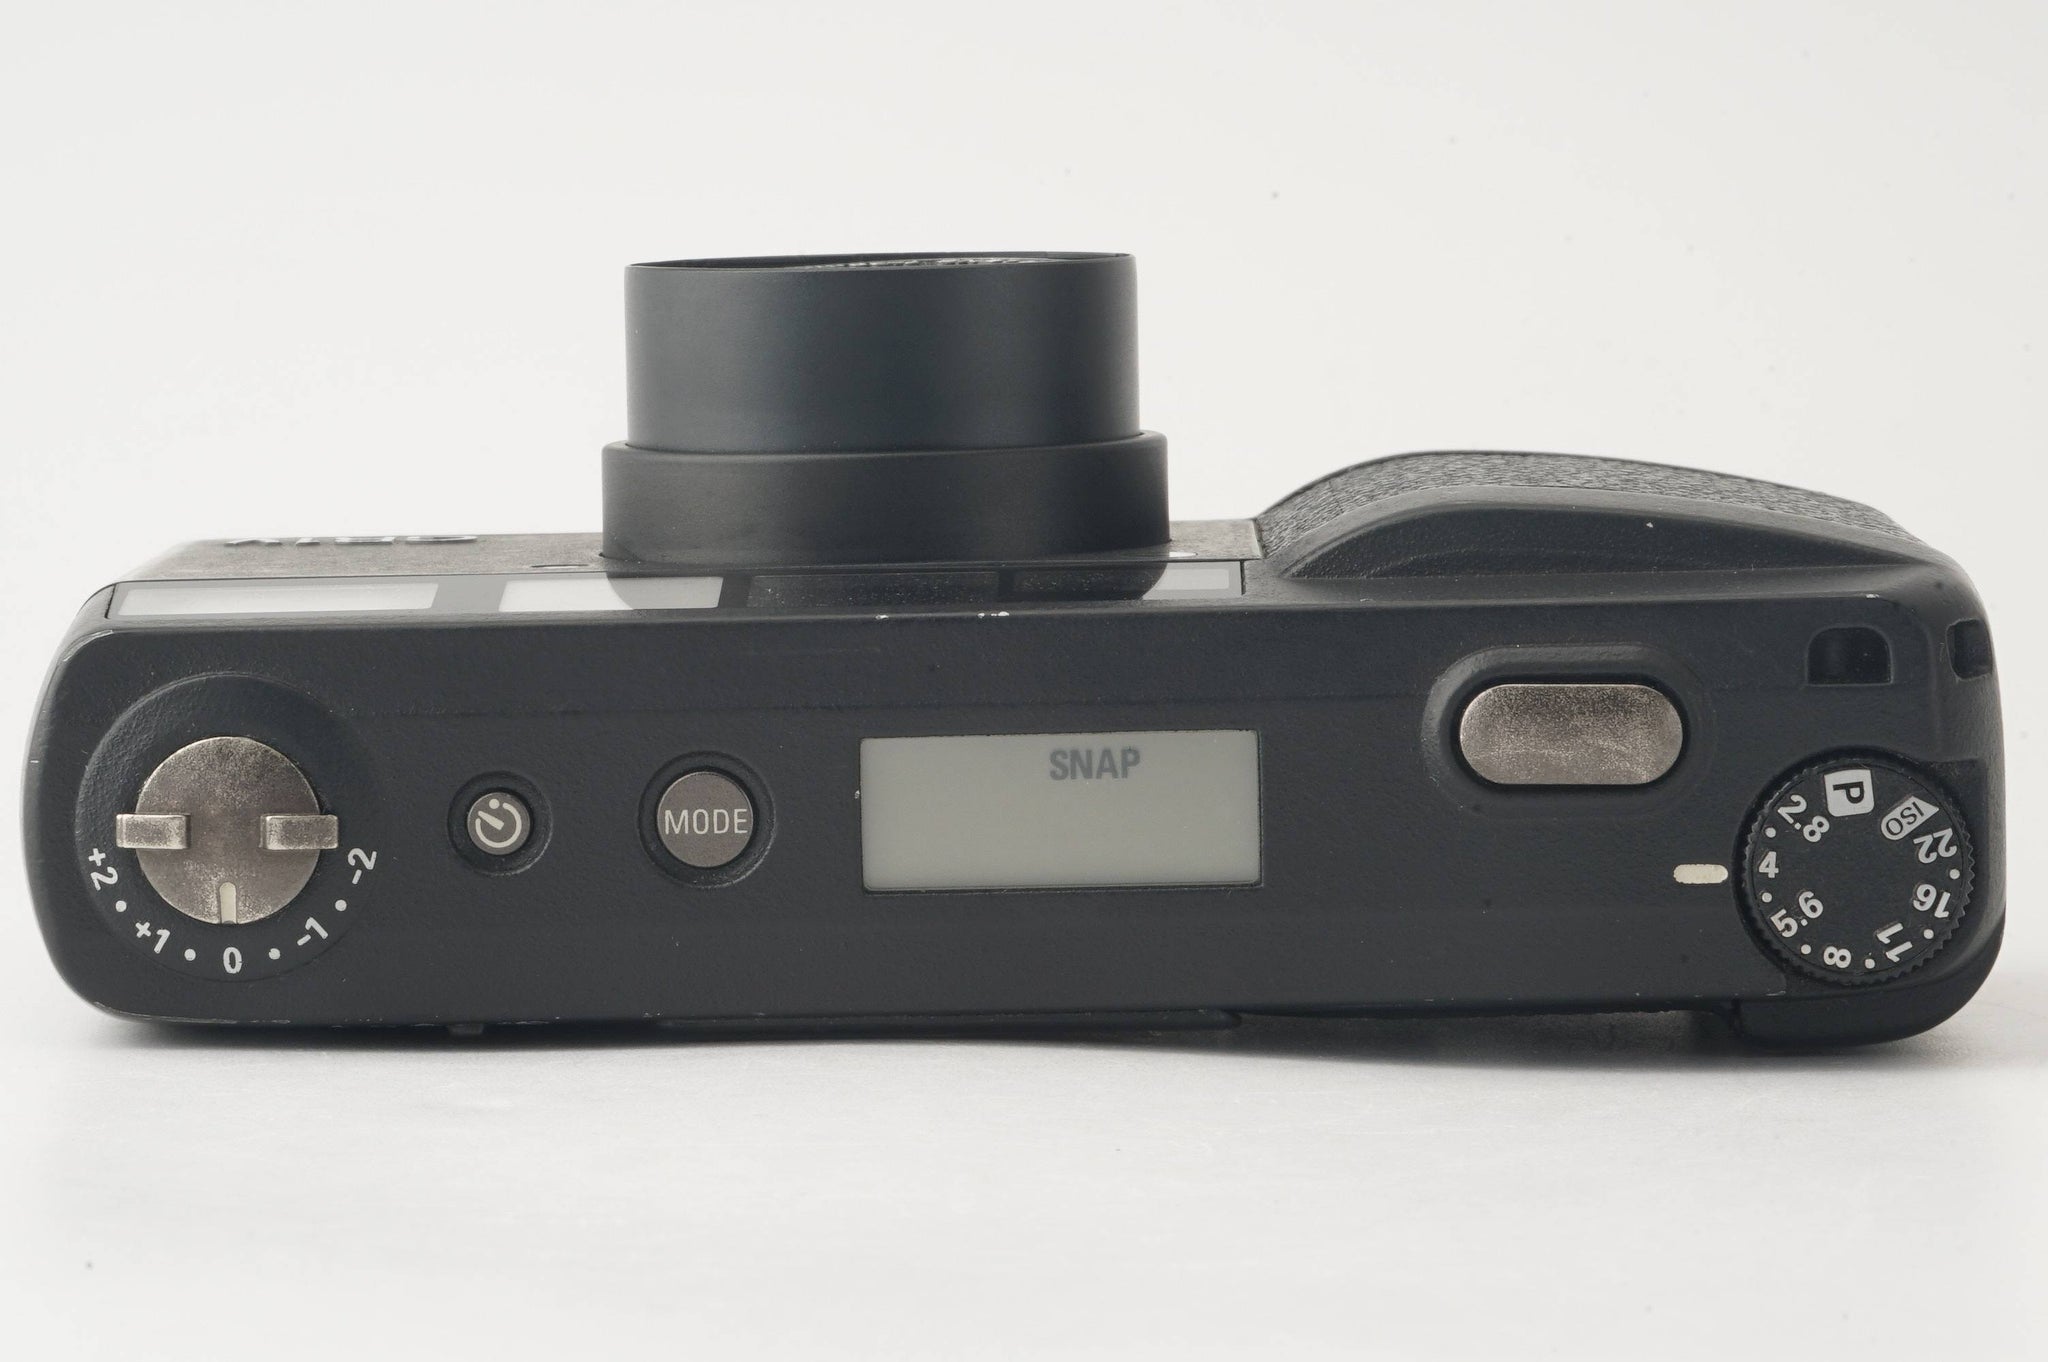 リコー Ricoh GR1V / GR LENS 28mm F2.8 – Natural Camera ...